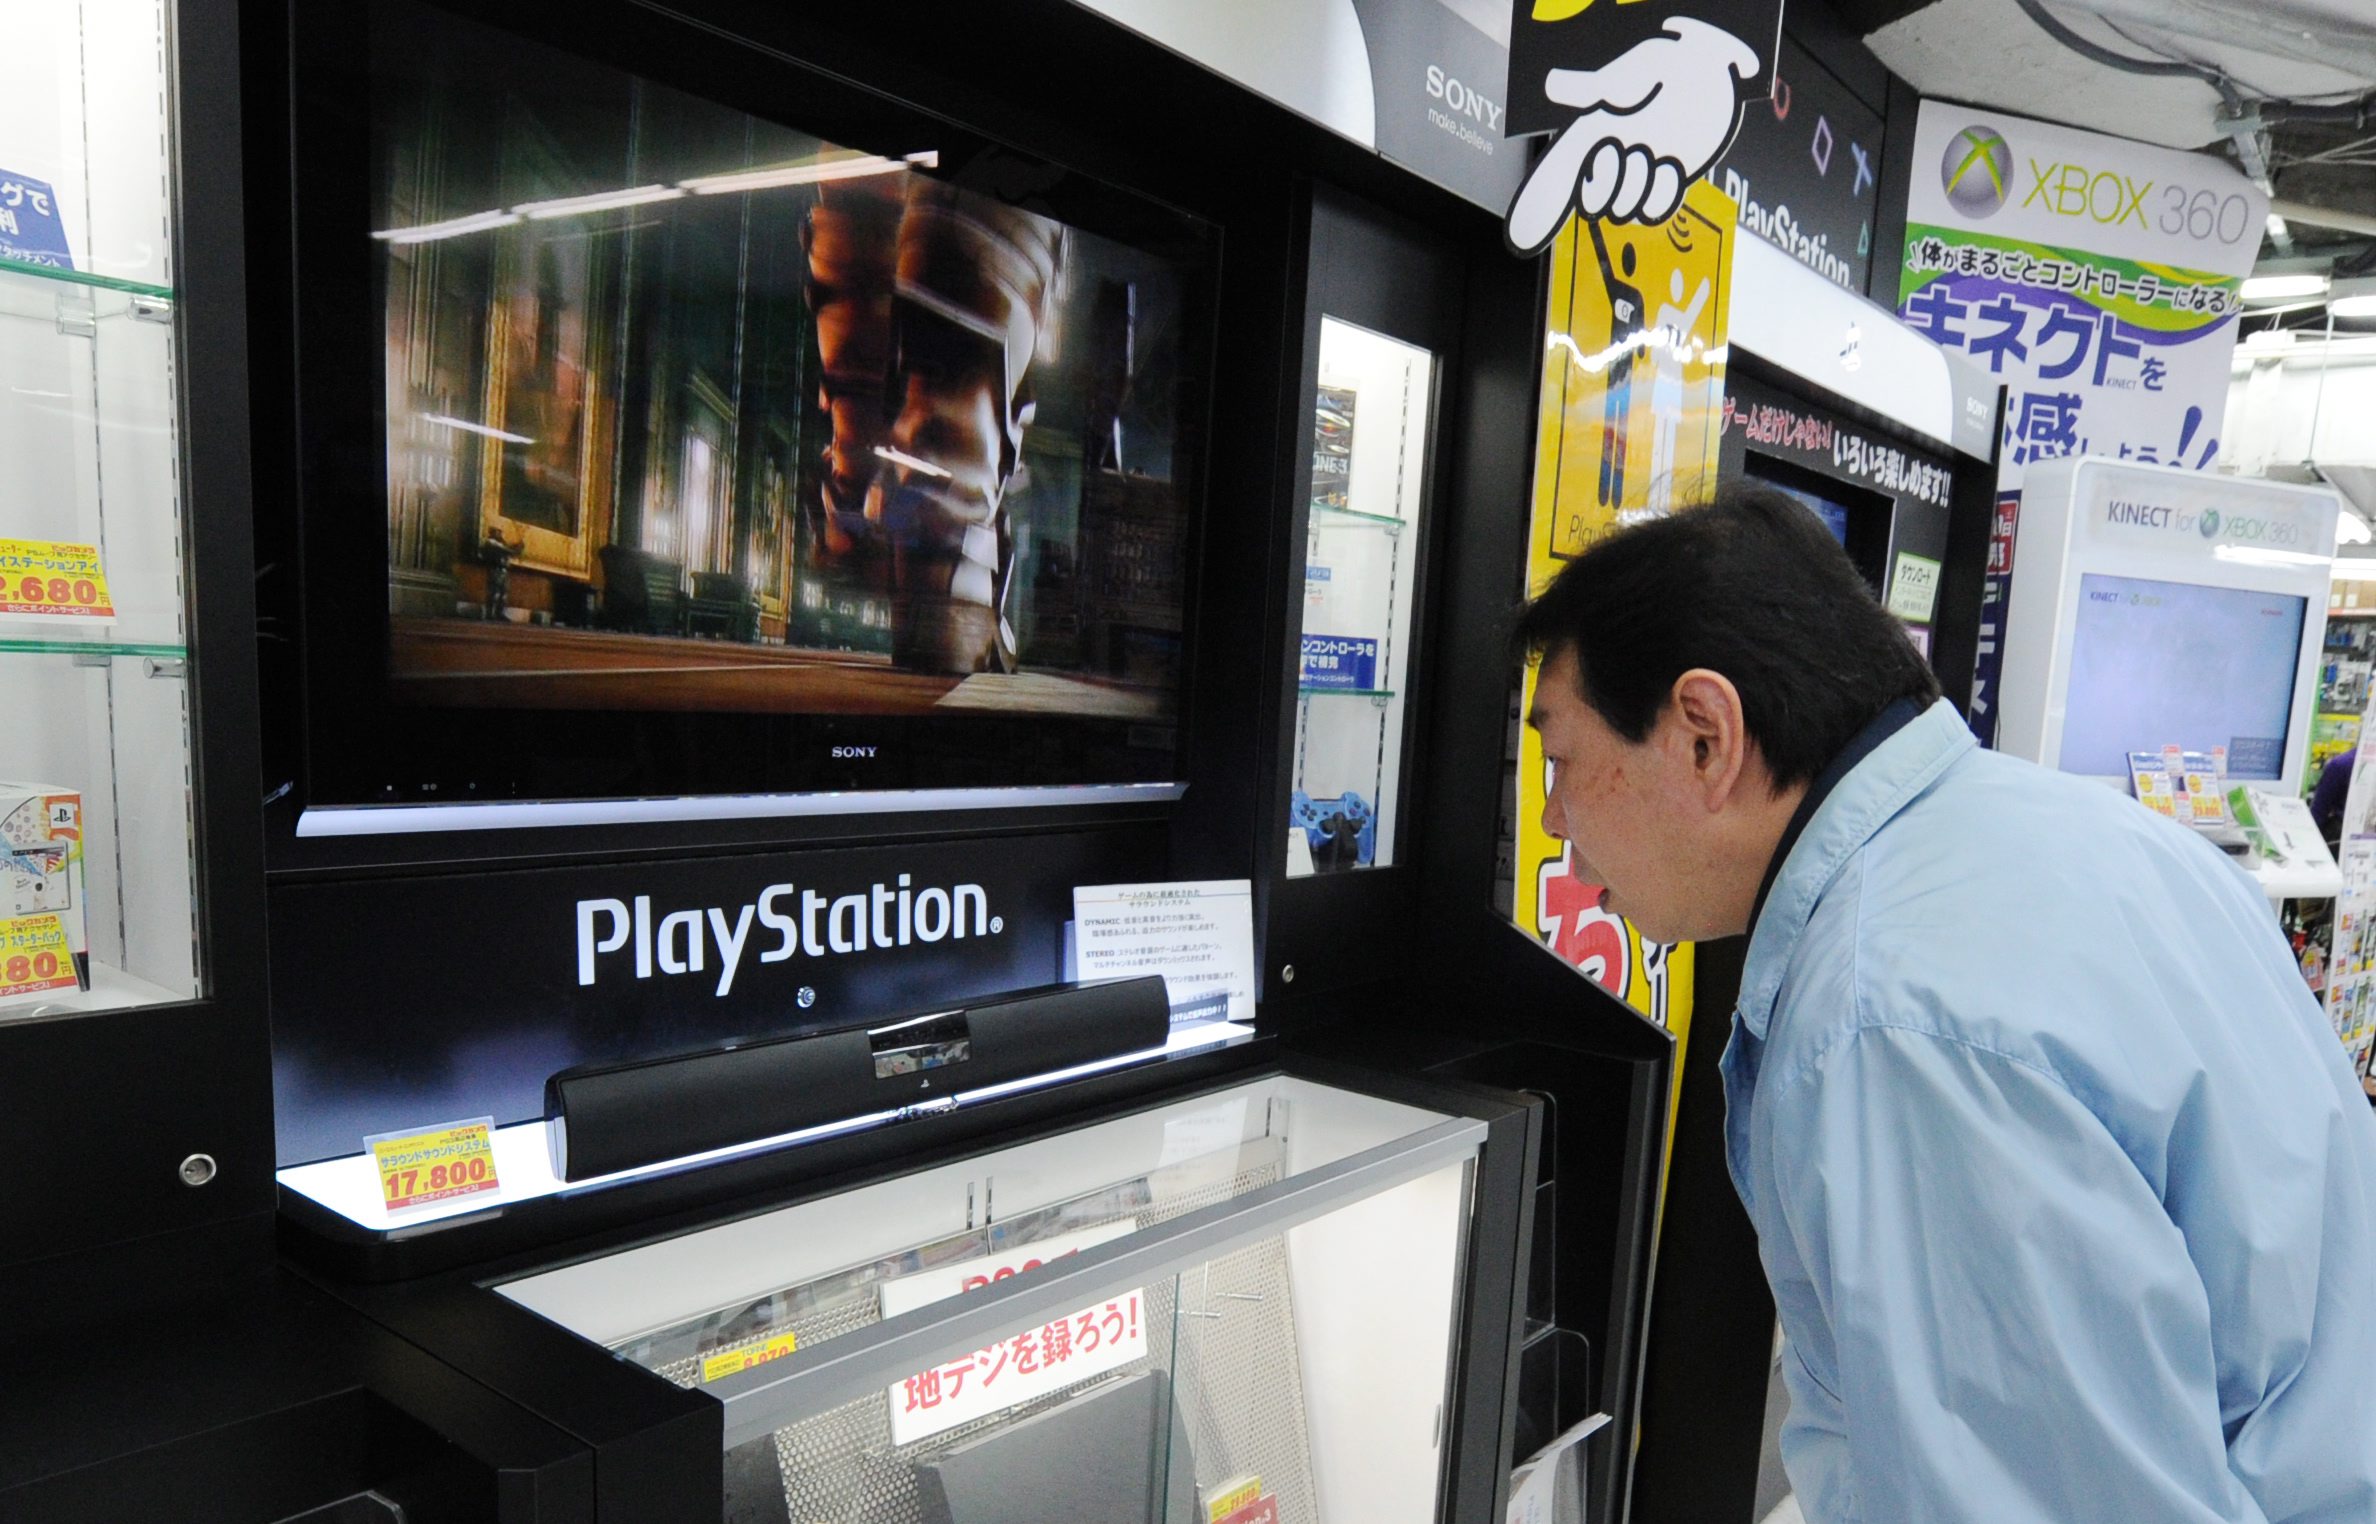 PlayStation 3 все още е силно изявен на пазара